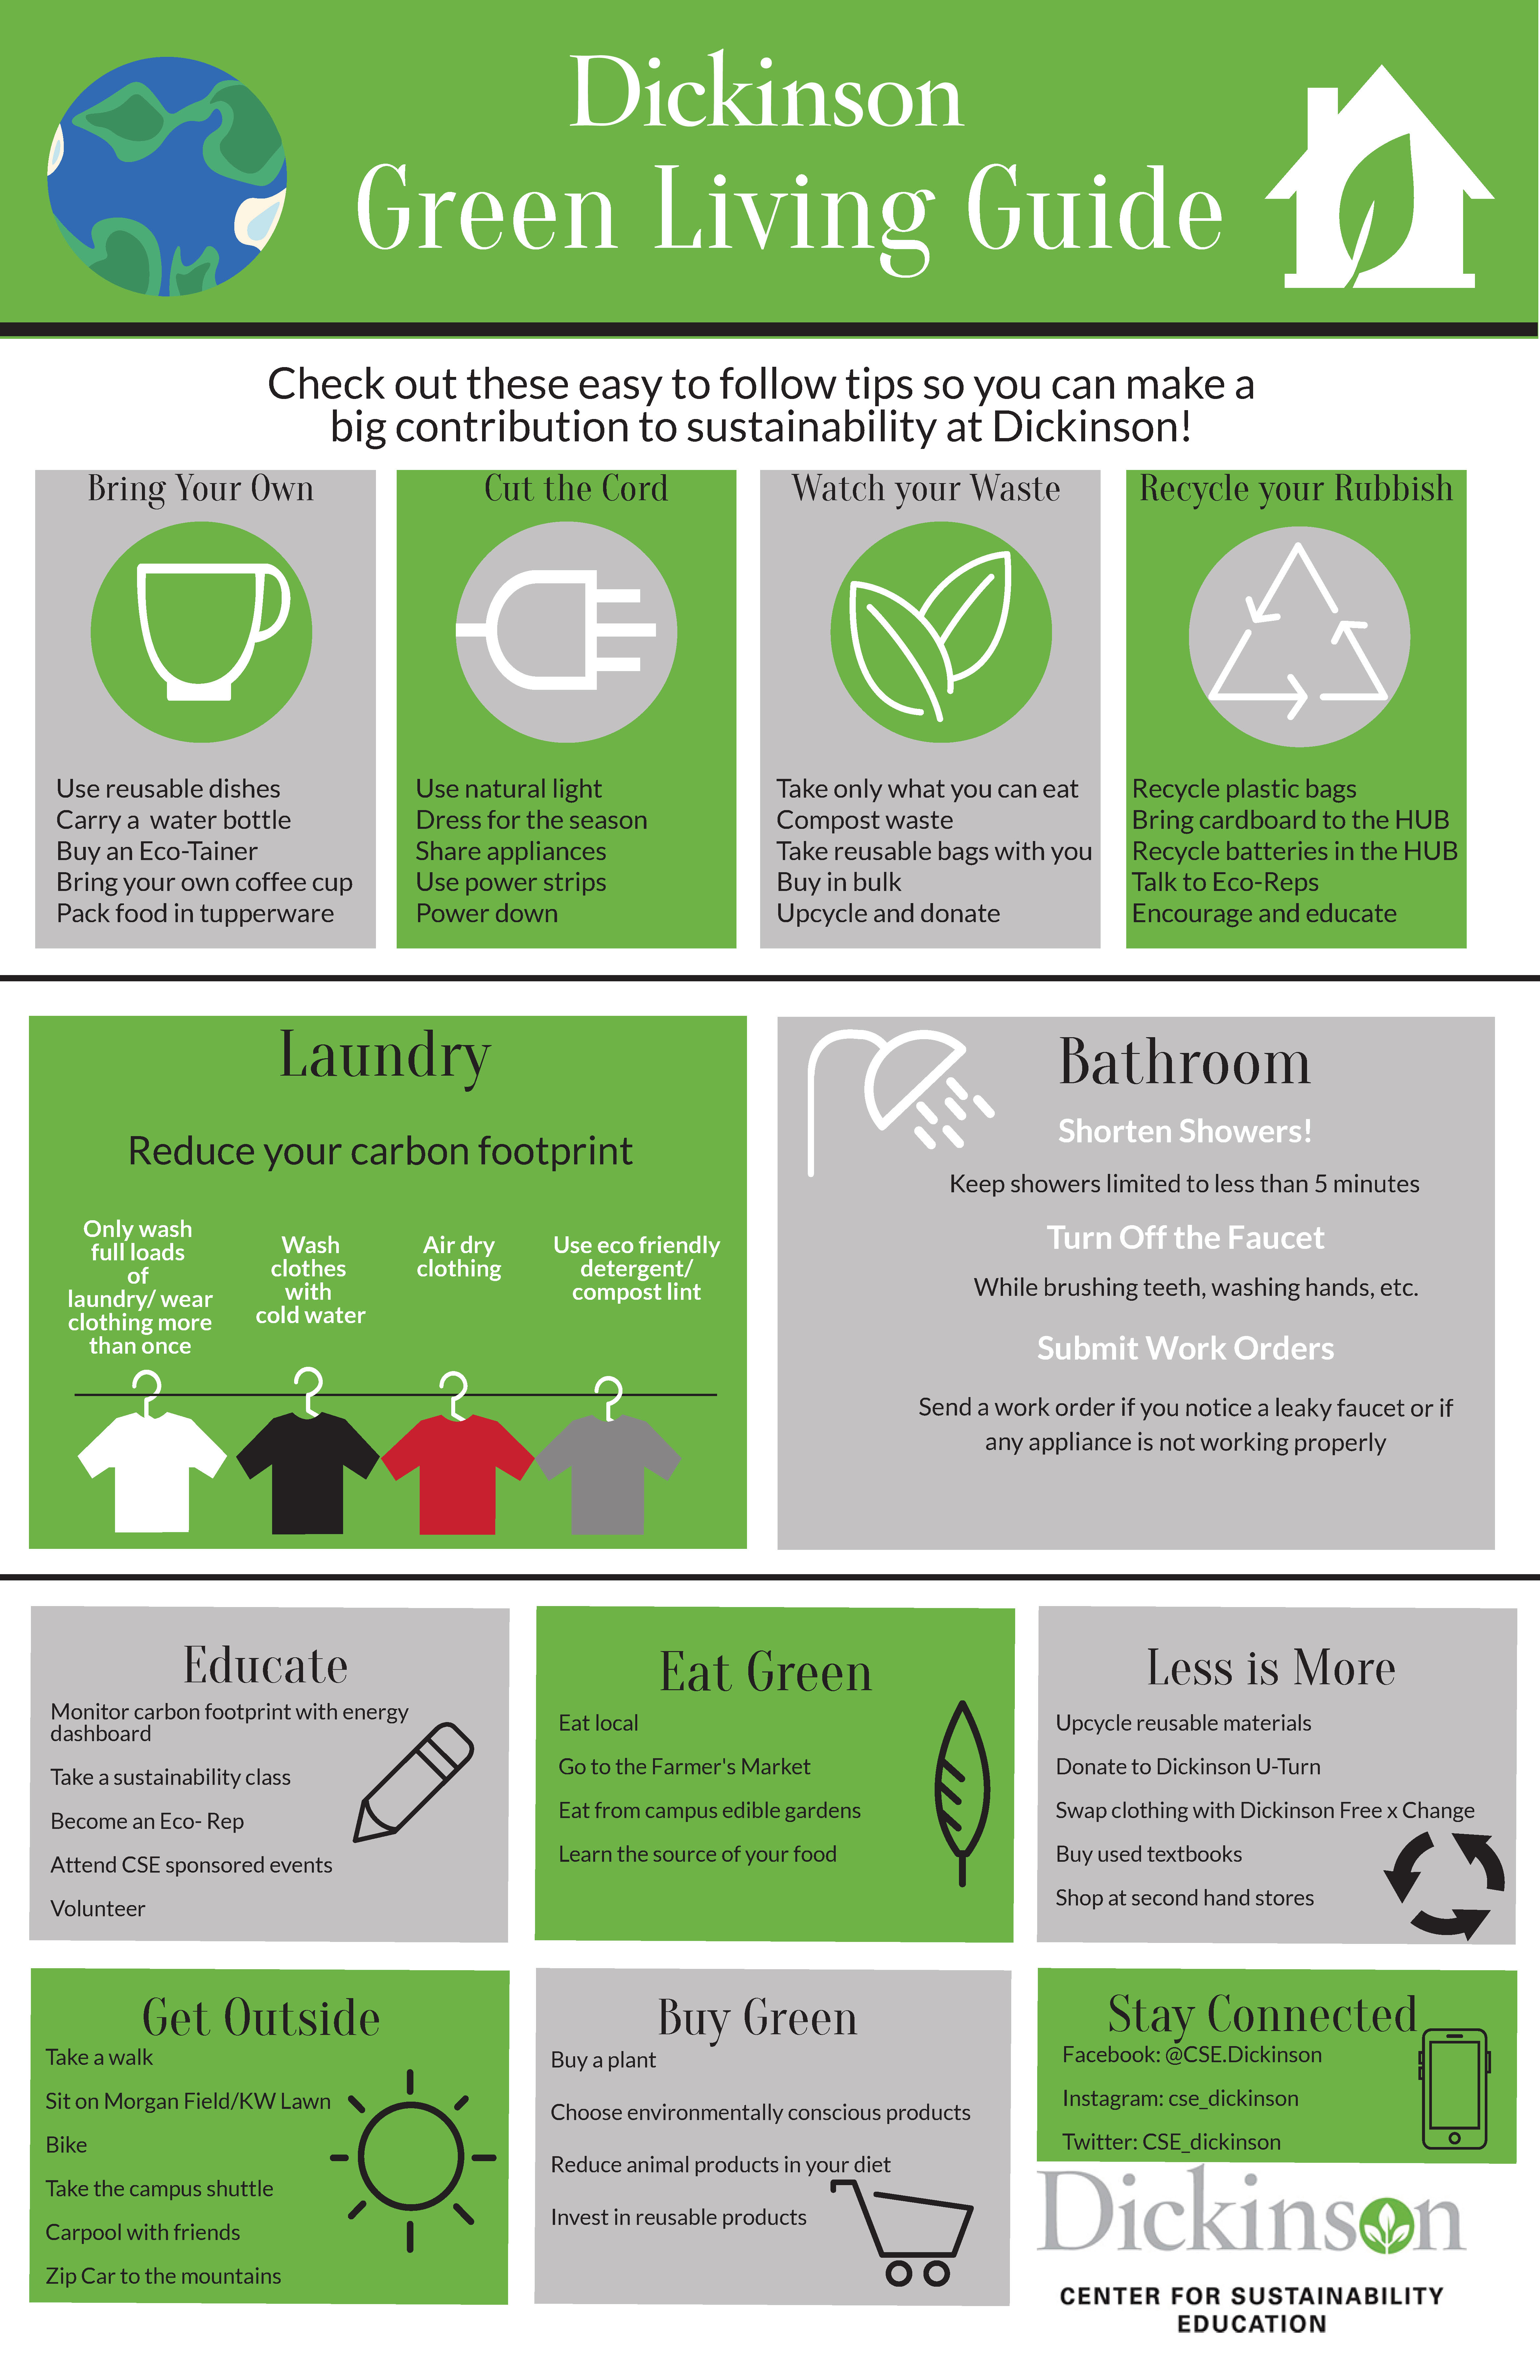 Green Living Guide